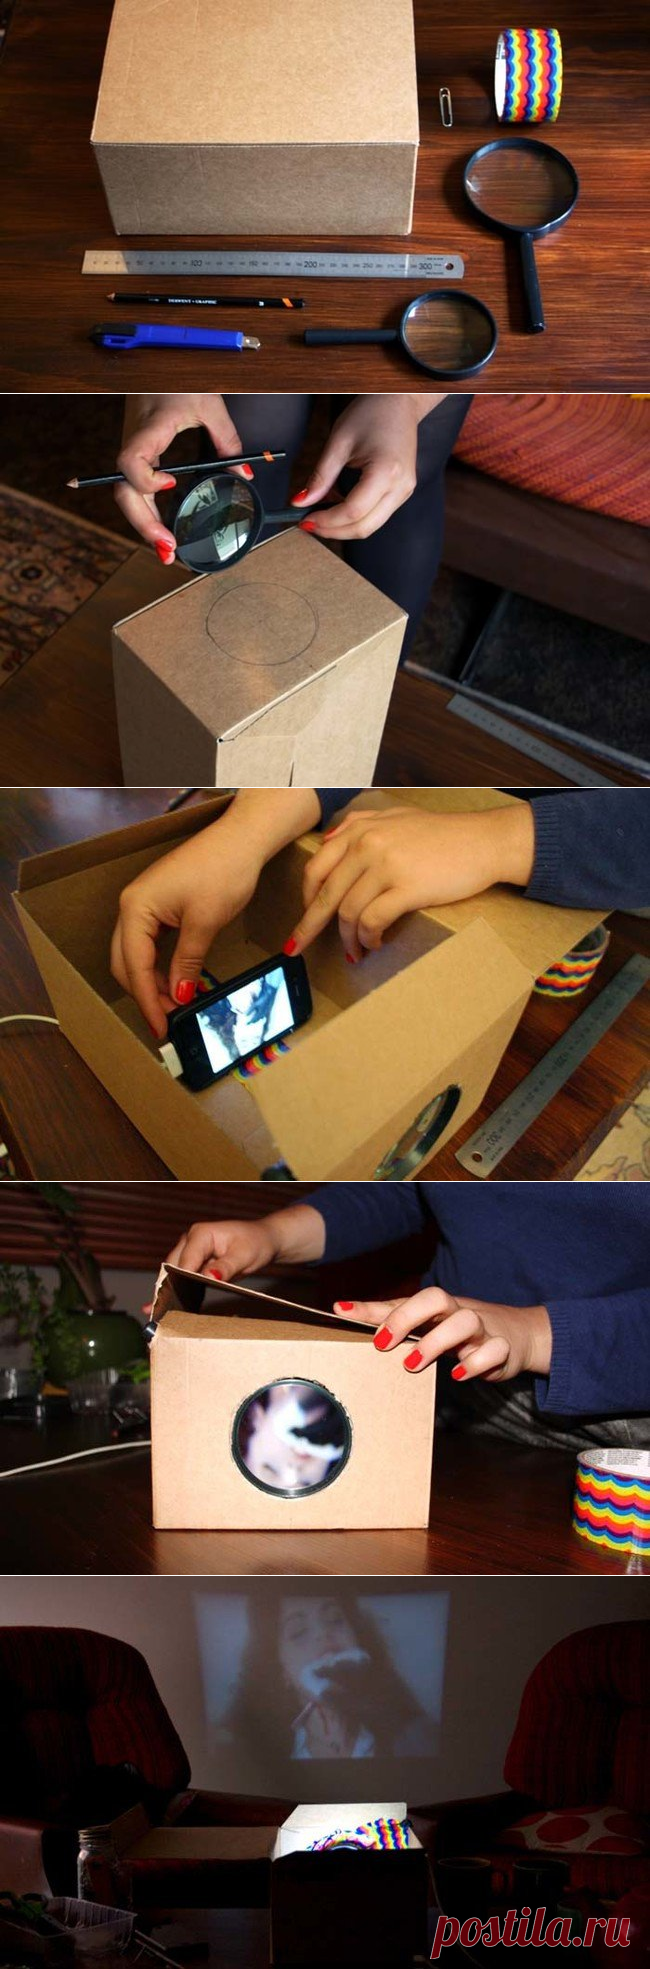 Проектор своими руками: как сделать из телефона без лупы для домашнего кинотеатра